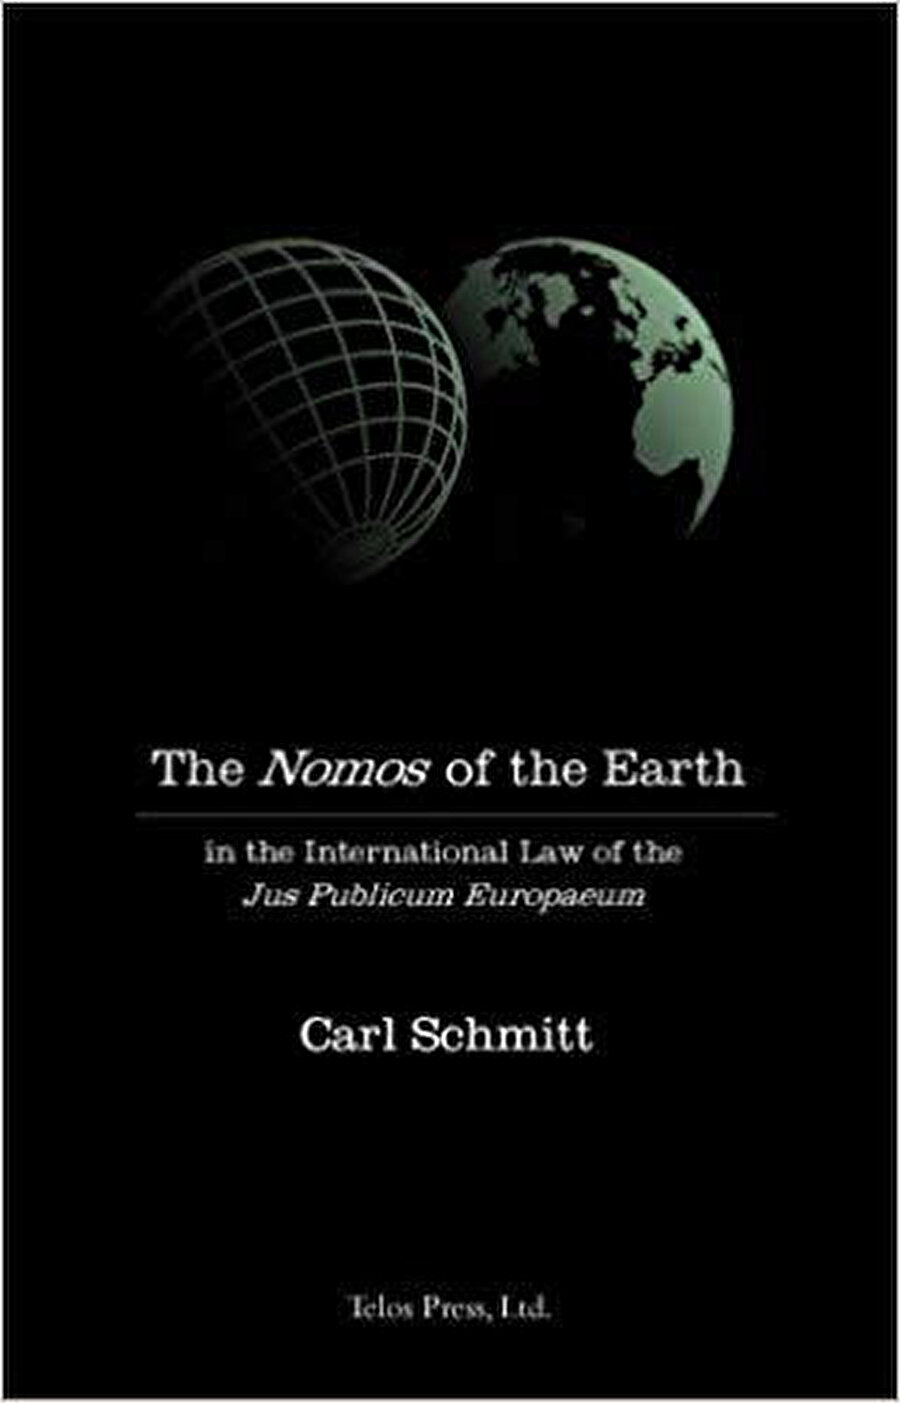 Carl Schmitt’in en önemli tarihsel ve geoplotik kitaplarından birisi olan Dünya’nın Ruhu’nda, Avrupa merkezli global düzenin kökeni tanımlanır. Schmitt, Yeni Dünya Düzeni’nin keşfiyle başlayıp 19. yüzyılın sonunda düşüşe maruz kalan Avrupa merkezli söz konusu düzenin kendine has karakterini ve bir medeniyet olarak dünya düzenine katkısını oldukça detaylı olarak analiz eder ve tartışır. Schmitt için bu durum, Avrupa’nın ilgili başarısını uluslararası hukukun ilk gerçekçi küresel nedeni olarak izah etmekten çok savaşın, egemen devletler arasındaki çatışma ve ilişkilerdeki kurucu rolünü de işaret eden bir anlama sahiptir. Burada egemen devlet, Batı rasyonalizminin en büyük ve köktenci başarısıdır. Schmitt’e göre Avrupa’nın dünya tarihindeki devrine ilişkin asıl dikkat çekici nokta ise, Eski Dünya’nın yerini dünyanın merkezi olarak değiştiren, Avrupa ve dünya politikasında arabulucu bir pozisyonda kendini konumlandıran Yeni Dünya’nın yani Amerika’nın bu süreçte oynadığı roldür. Birleşik Devletler’in ekonomik mevcudiyet ile politik yokluk, izolasyonizm ve müdahalecilik arasındaki iç çatışmaları, bugün yeni bir dünya düzeninin yaratılmasını engellemeye devam eden küresel sorunlardır. 